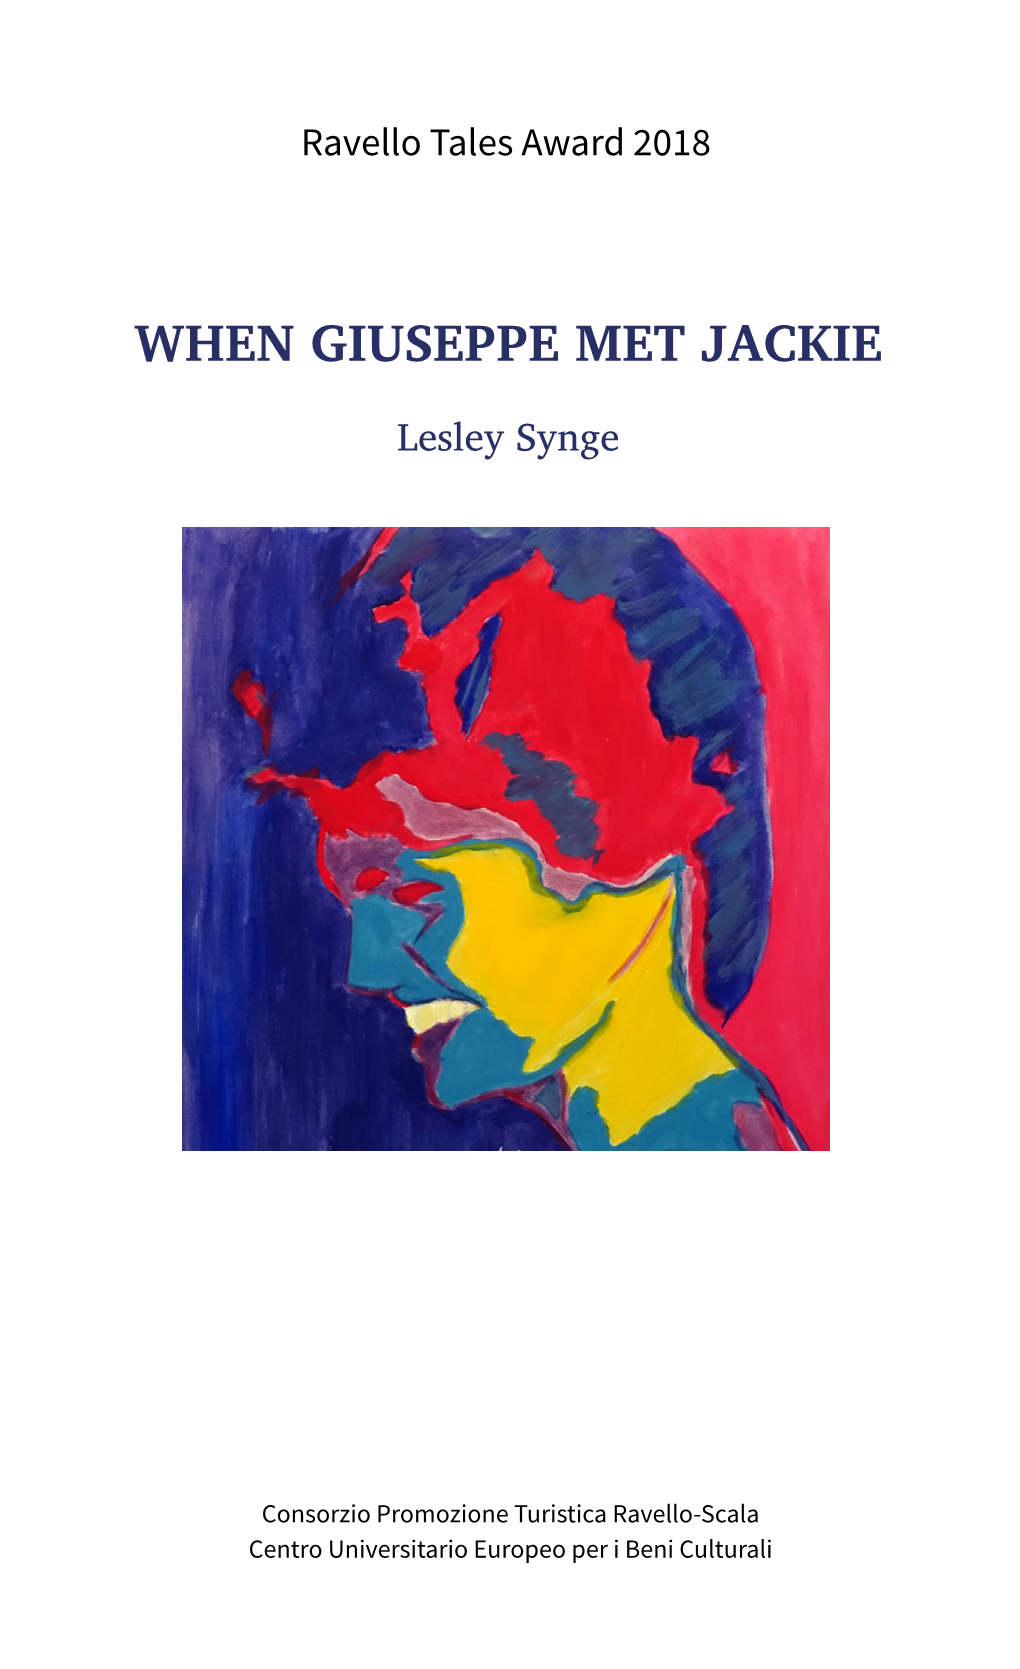 When Giuseppe Met Jackie